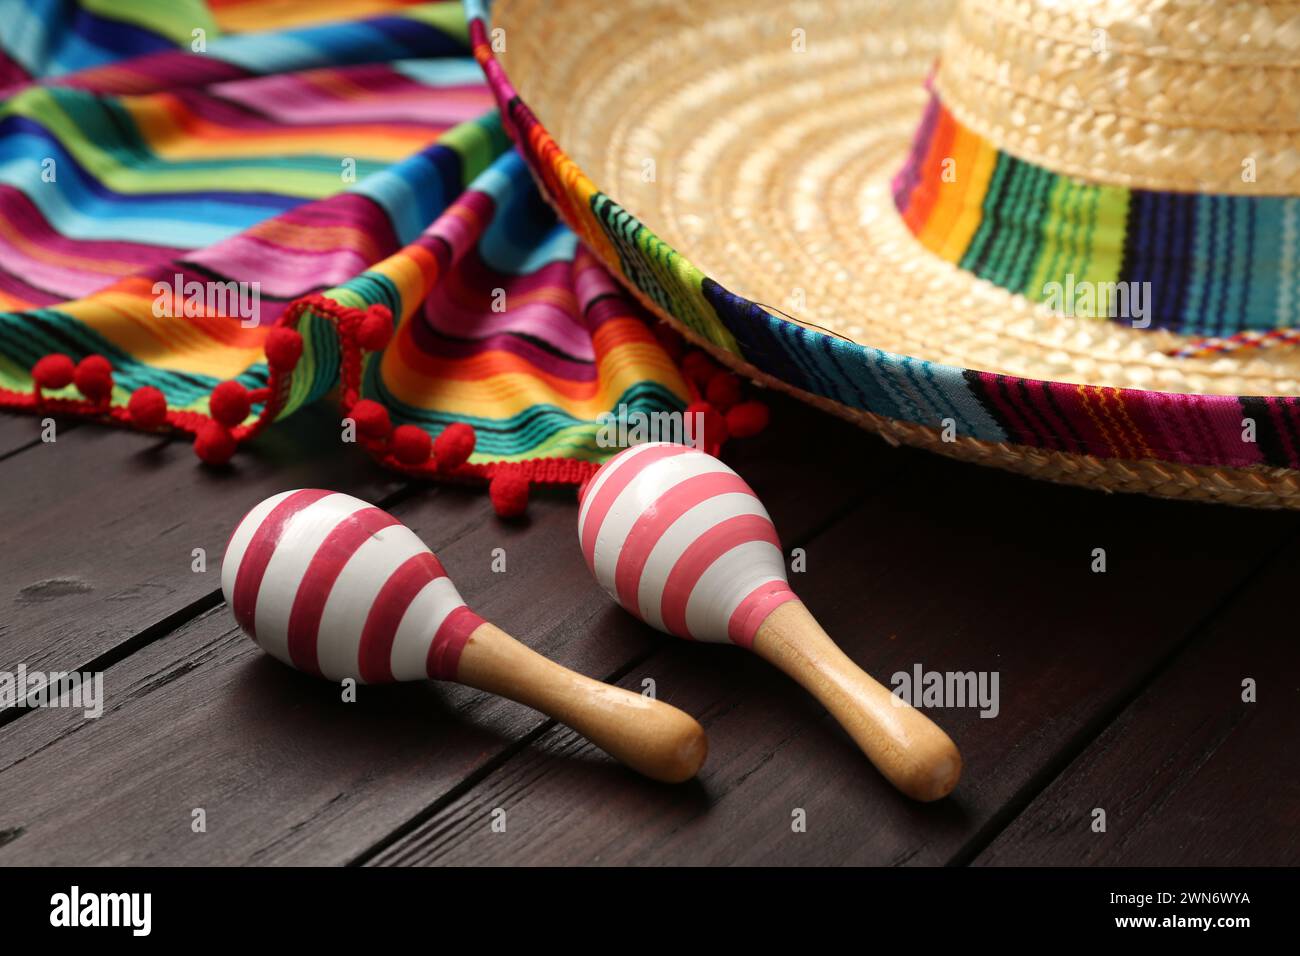 Chapeau sombrero mexicain, maracas et poncho coloré sur fond en bois Banque D'Images